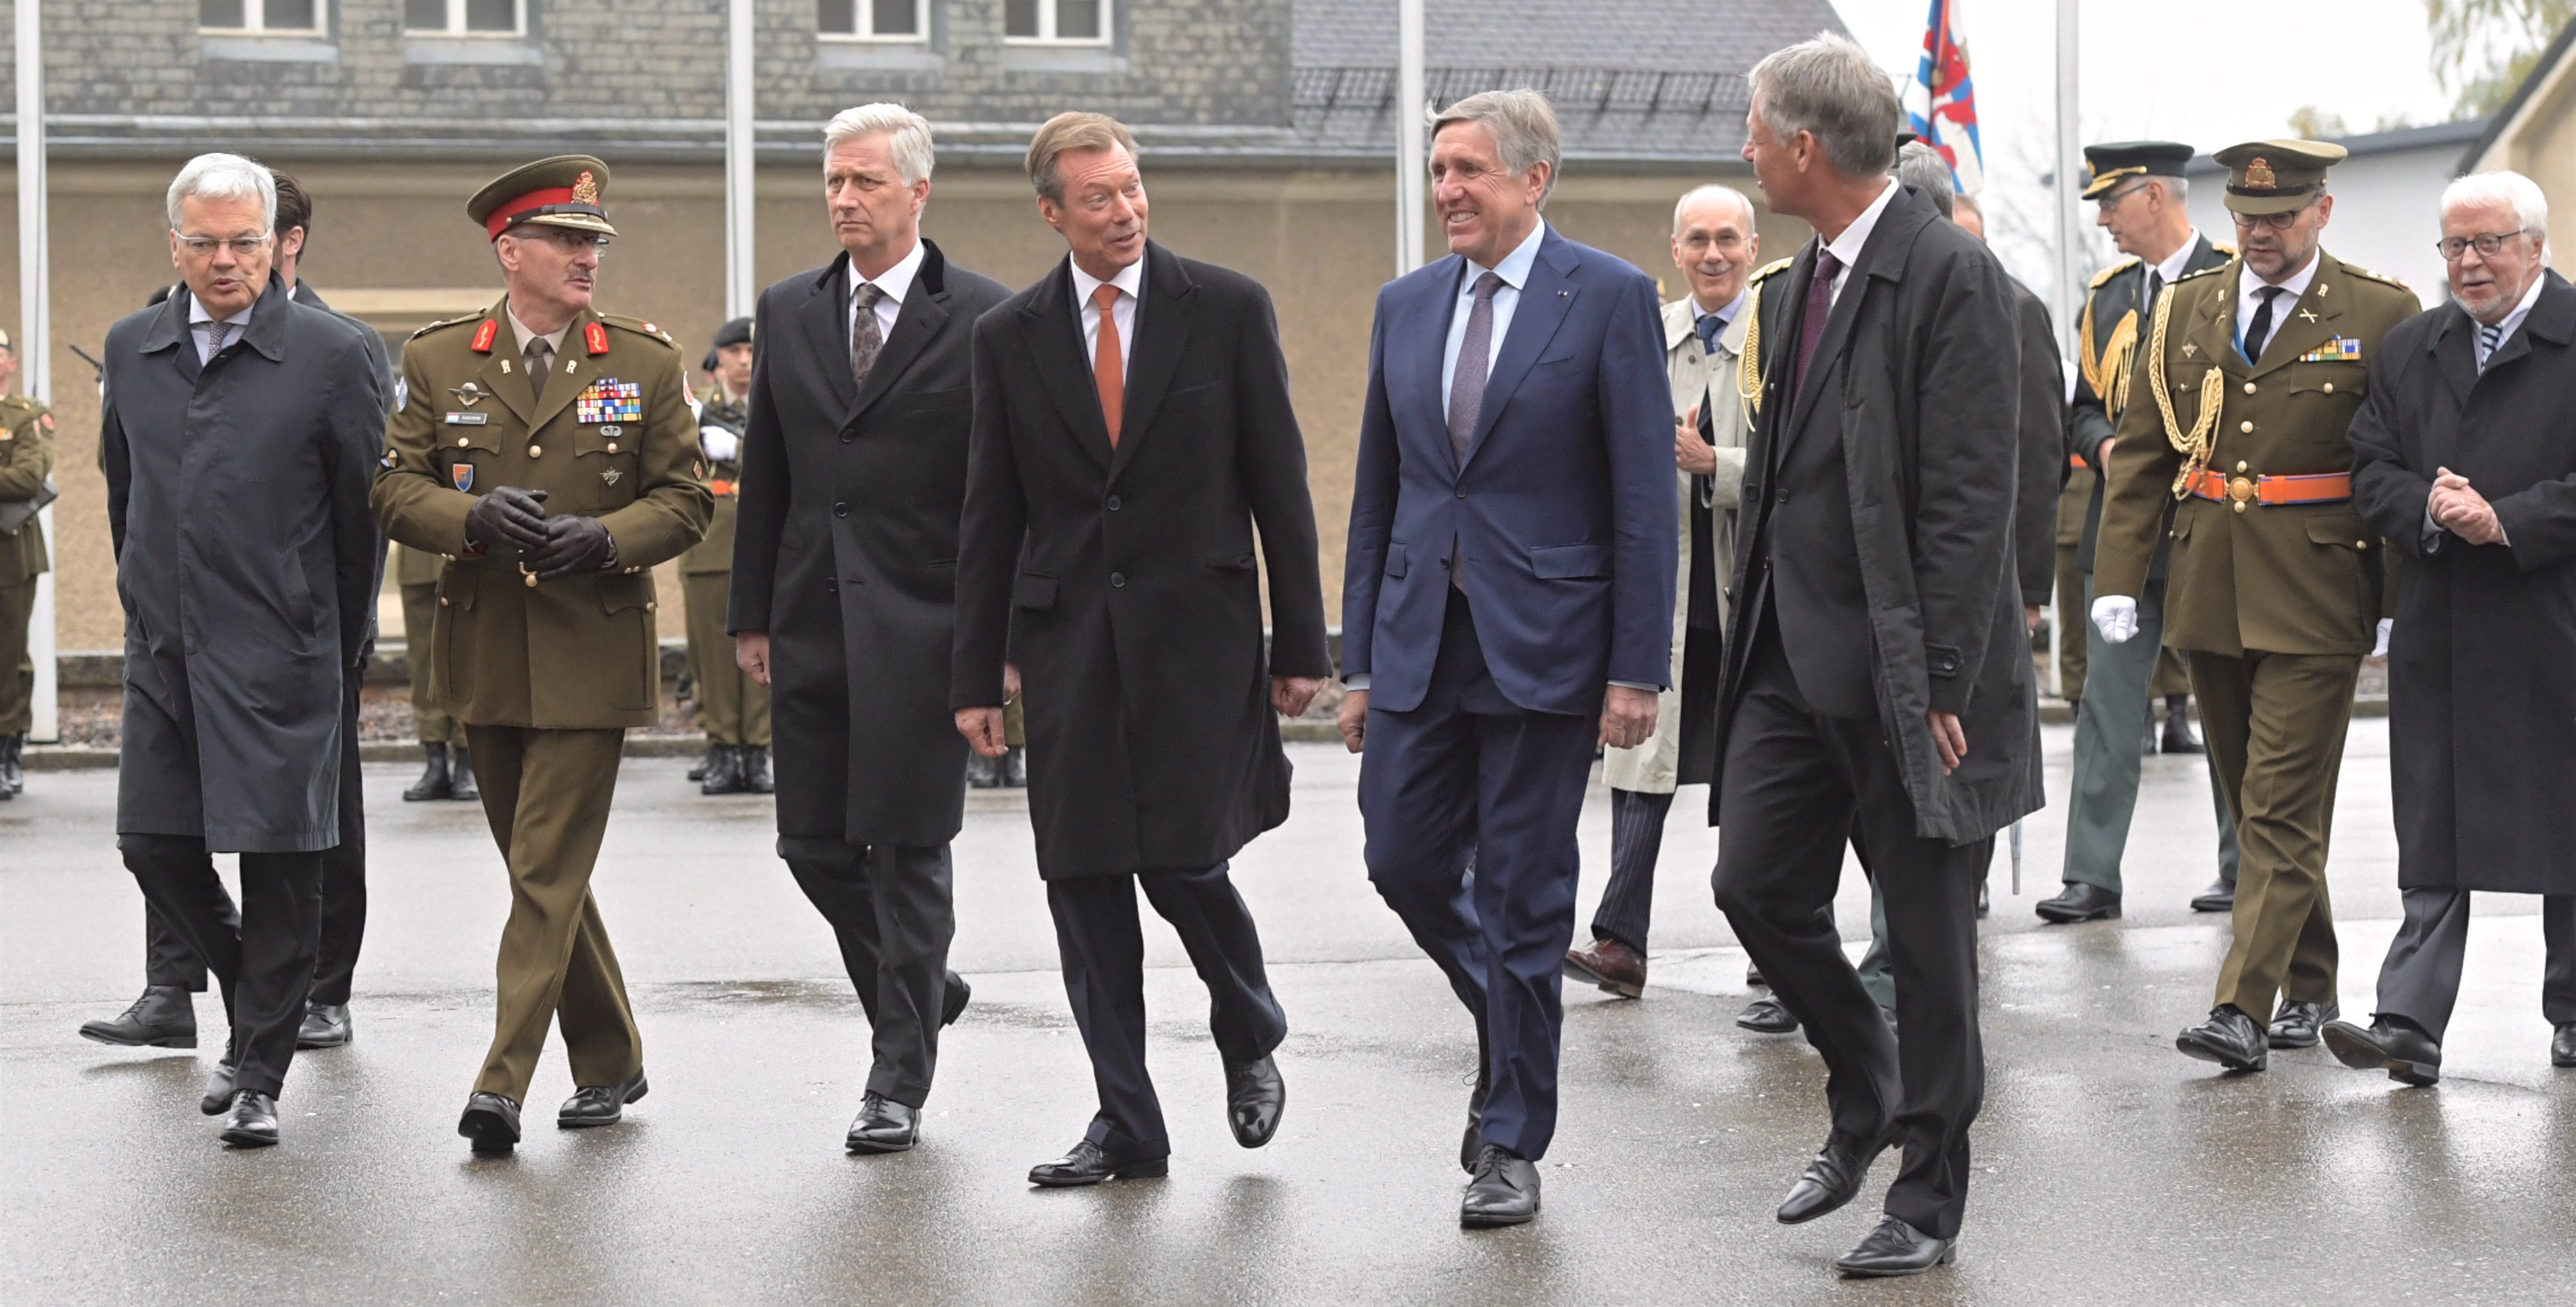 Tour durch Luxemburg: Die belgische Königsfamilie besucht das Großherzogtum